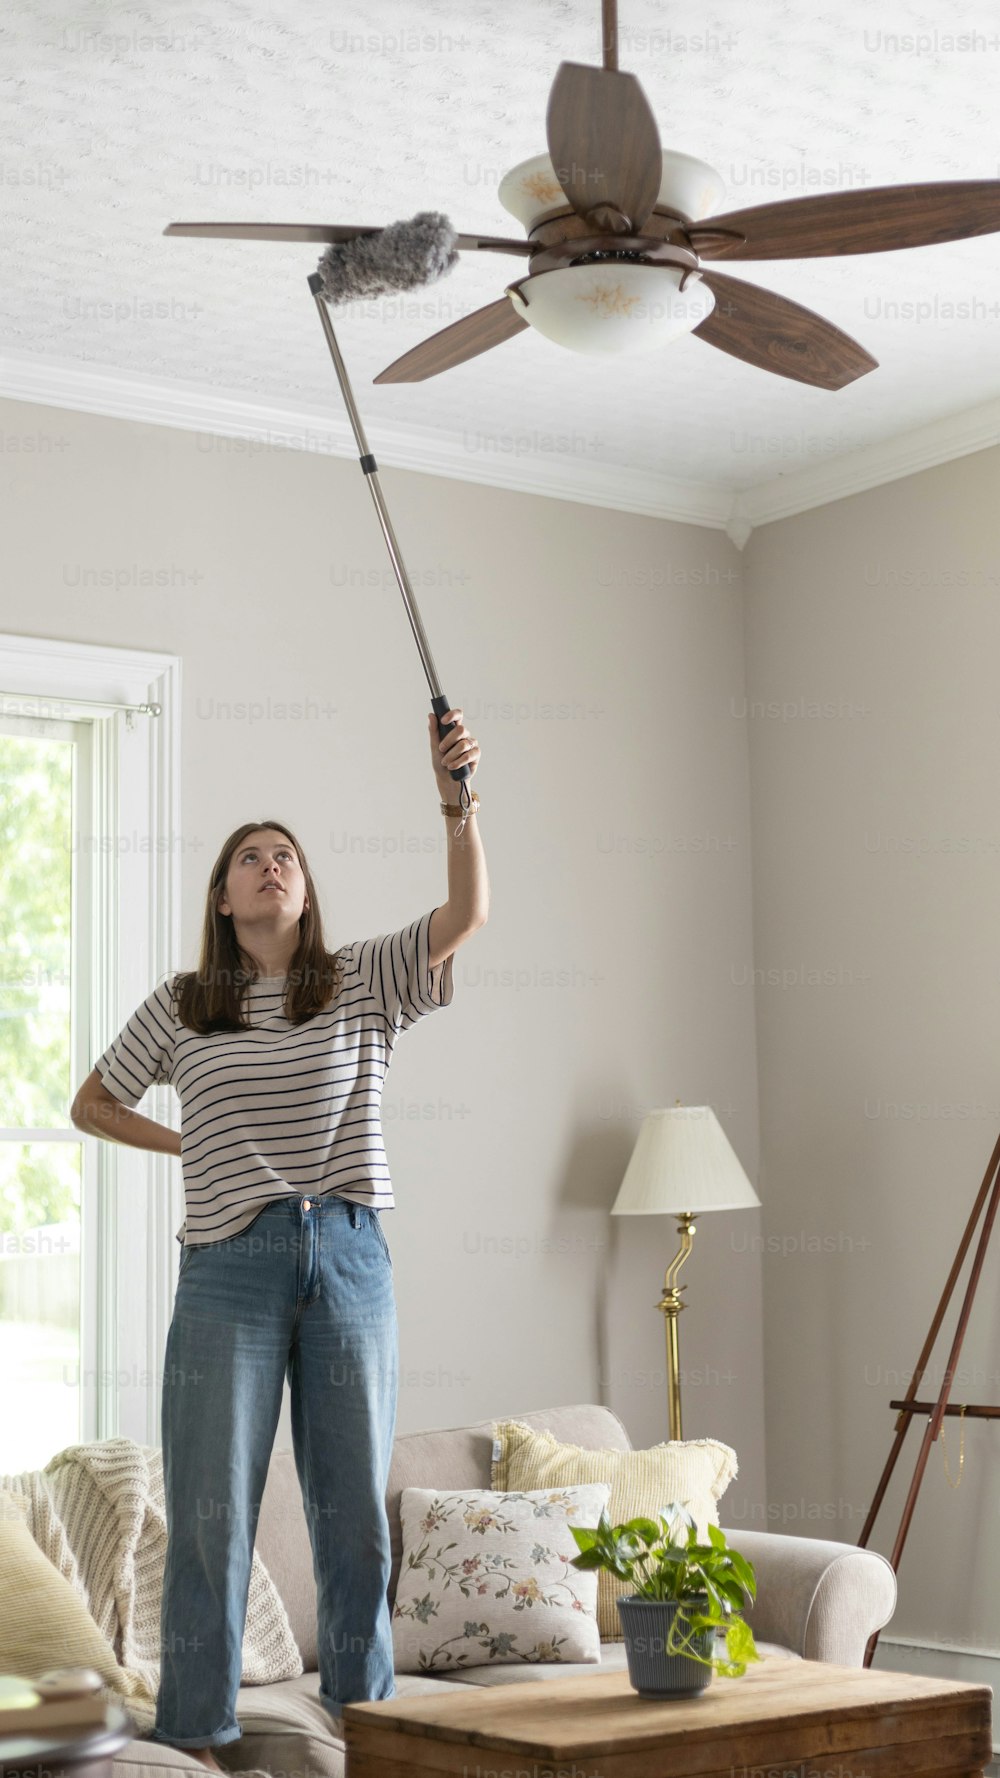 Une femme debout dans un salon tenant un ventilateur de plafond